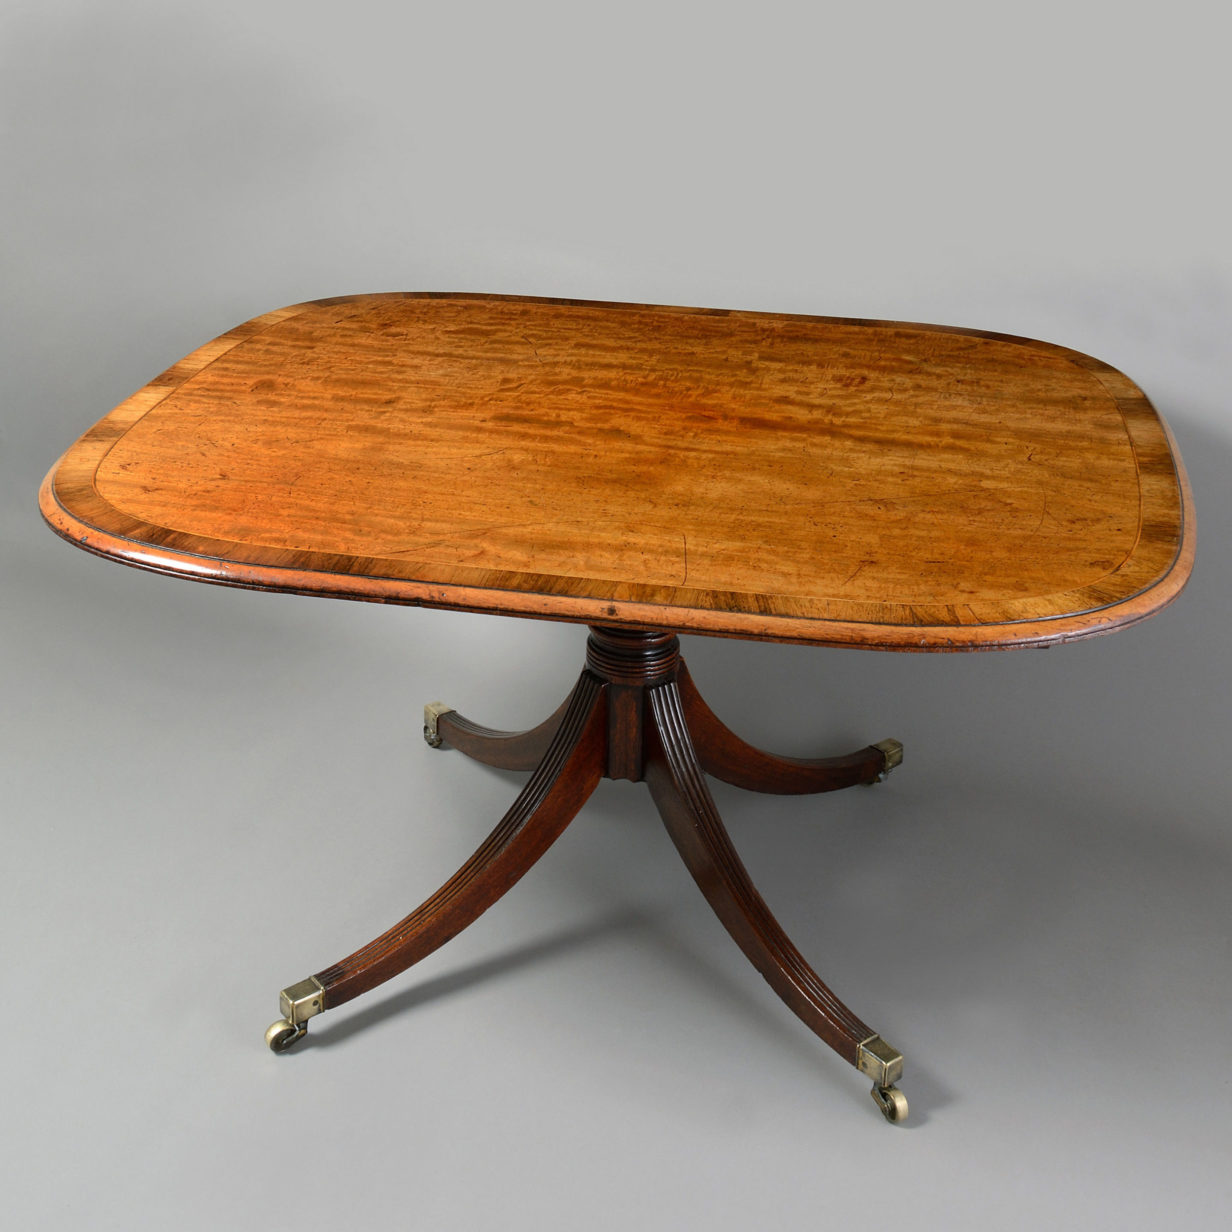 A regency period mahogany breakfast table